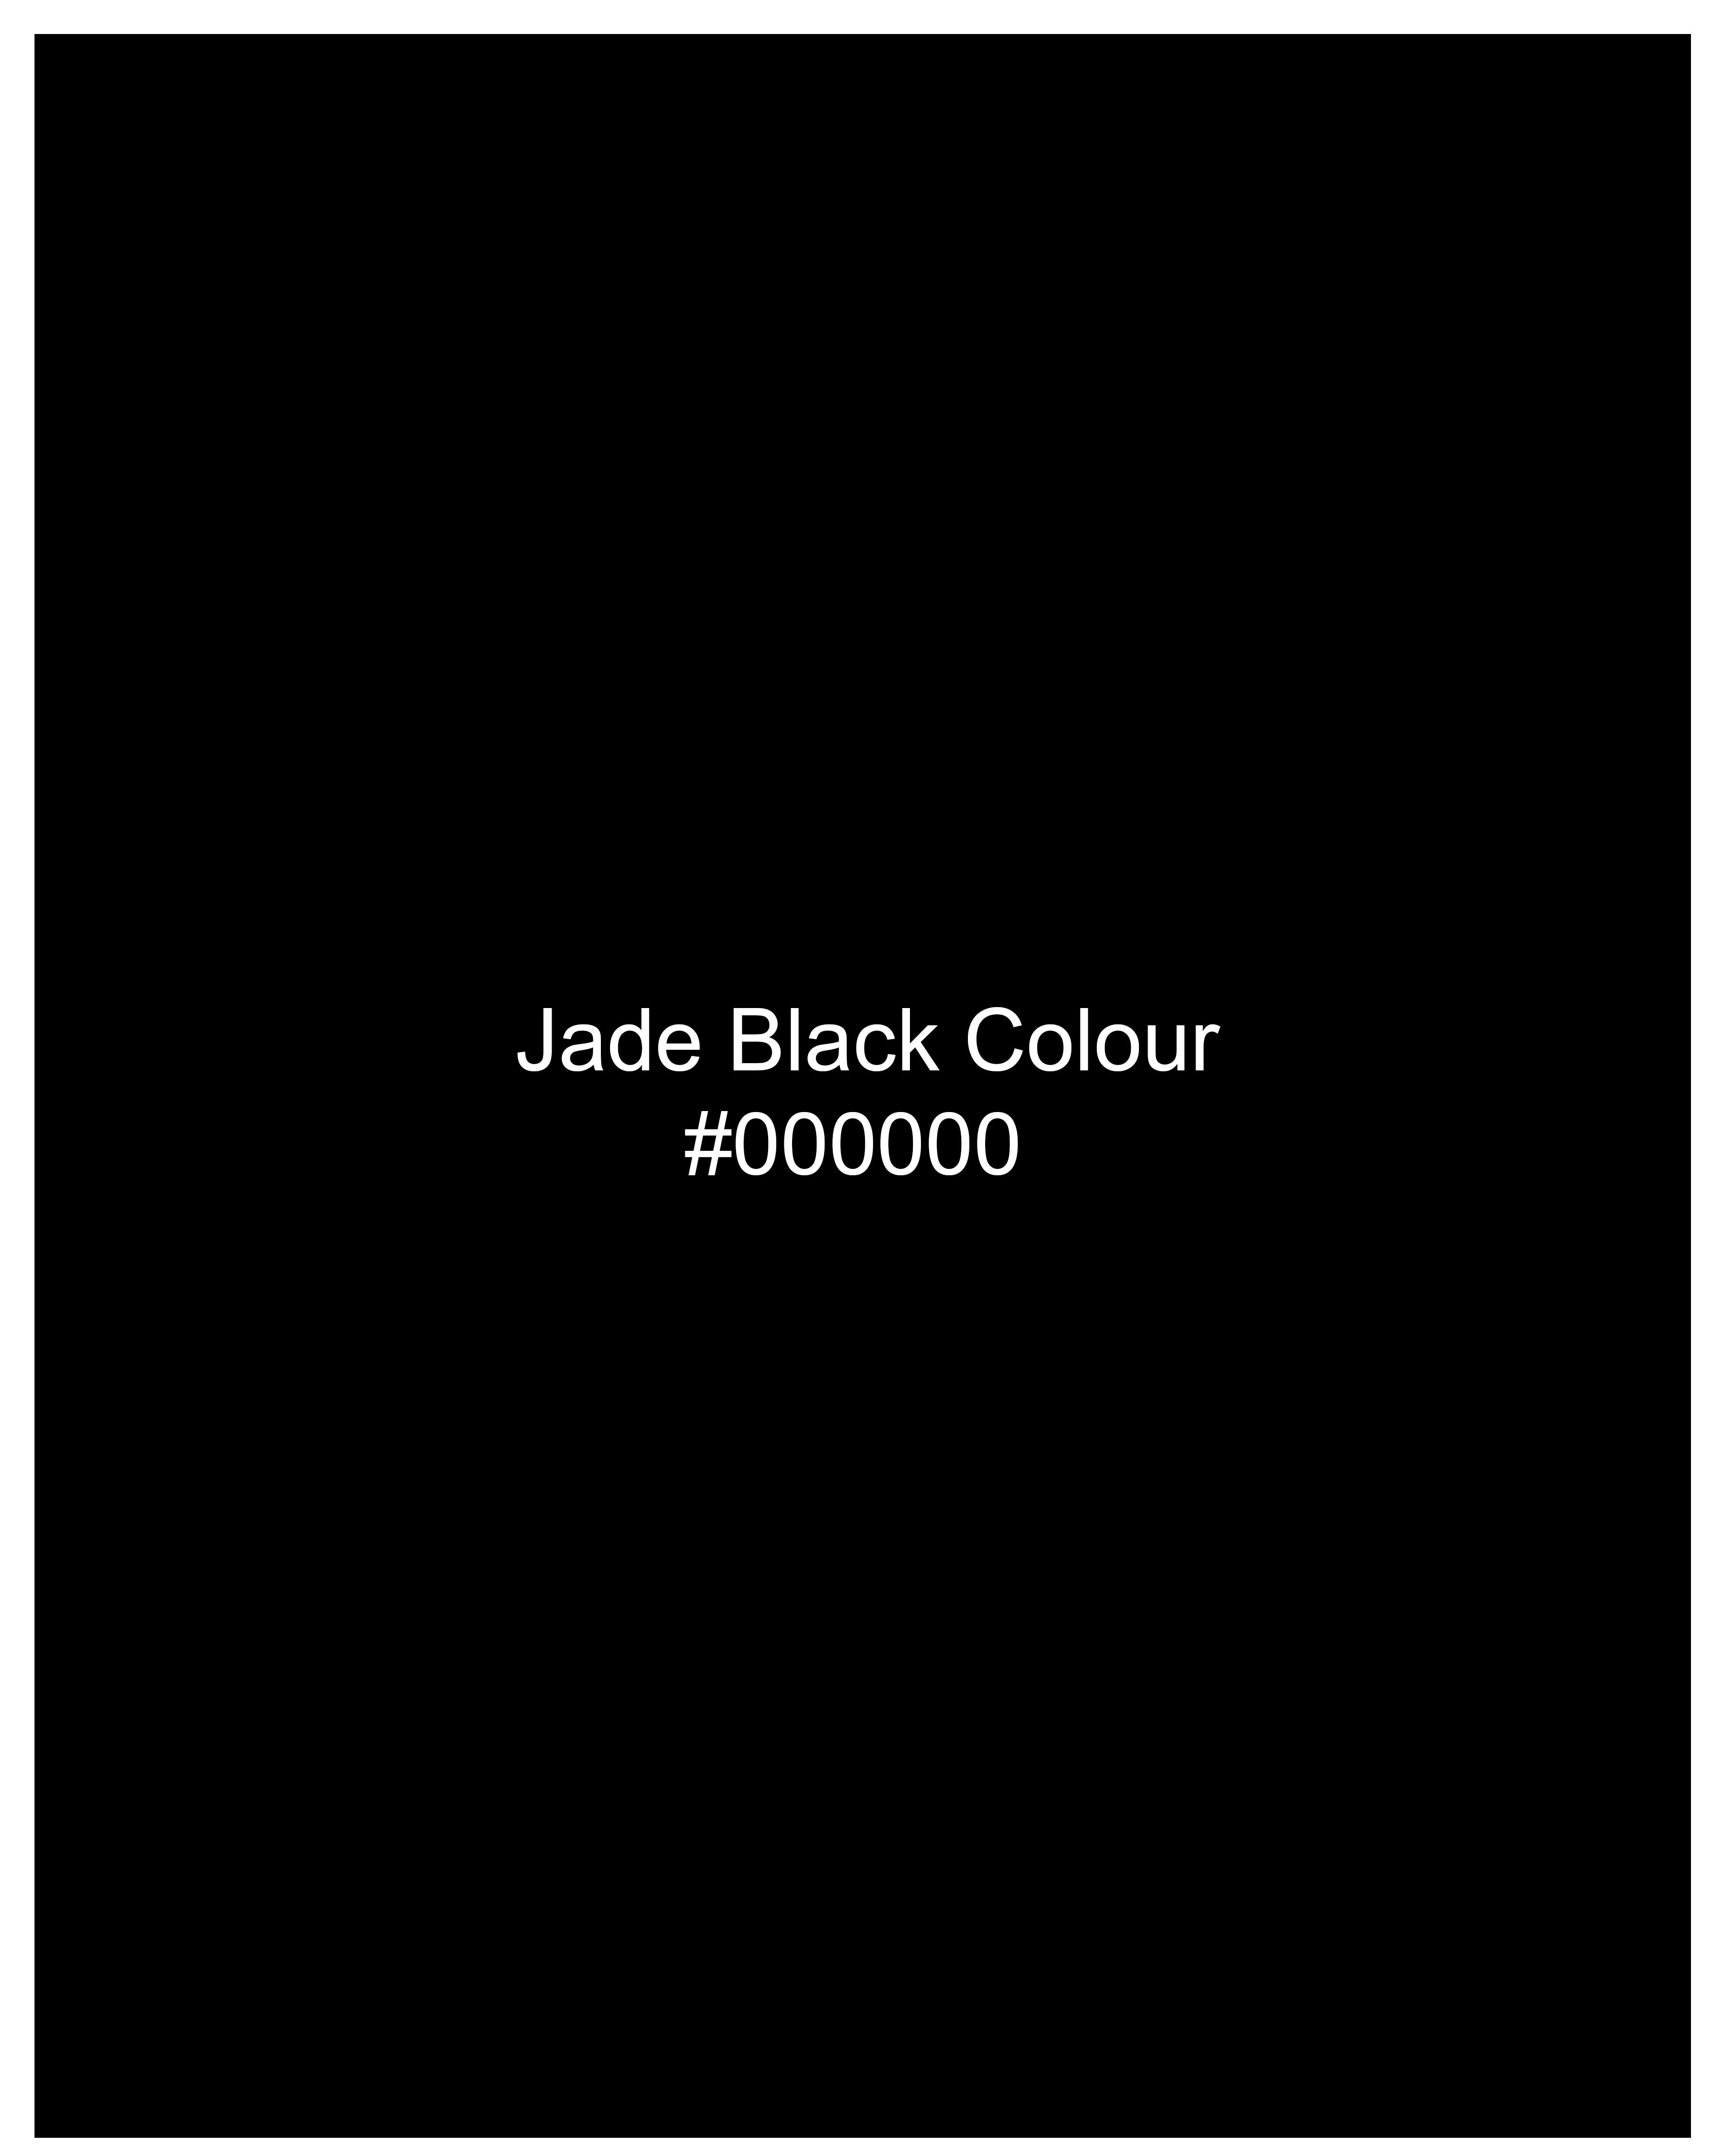 Jade Black Subtle Sheen Slight Stretch Performance Blazer BL21SB-36, BL21SB-38, BL21SB-40, BL21SB-42, BL21SB-44, BL21SB-46, BL21SB-48, BL21SB-50, BL21SB-52, BL21SB-54, BL21SB-56, BL21SB-58, BL21SB-60